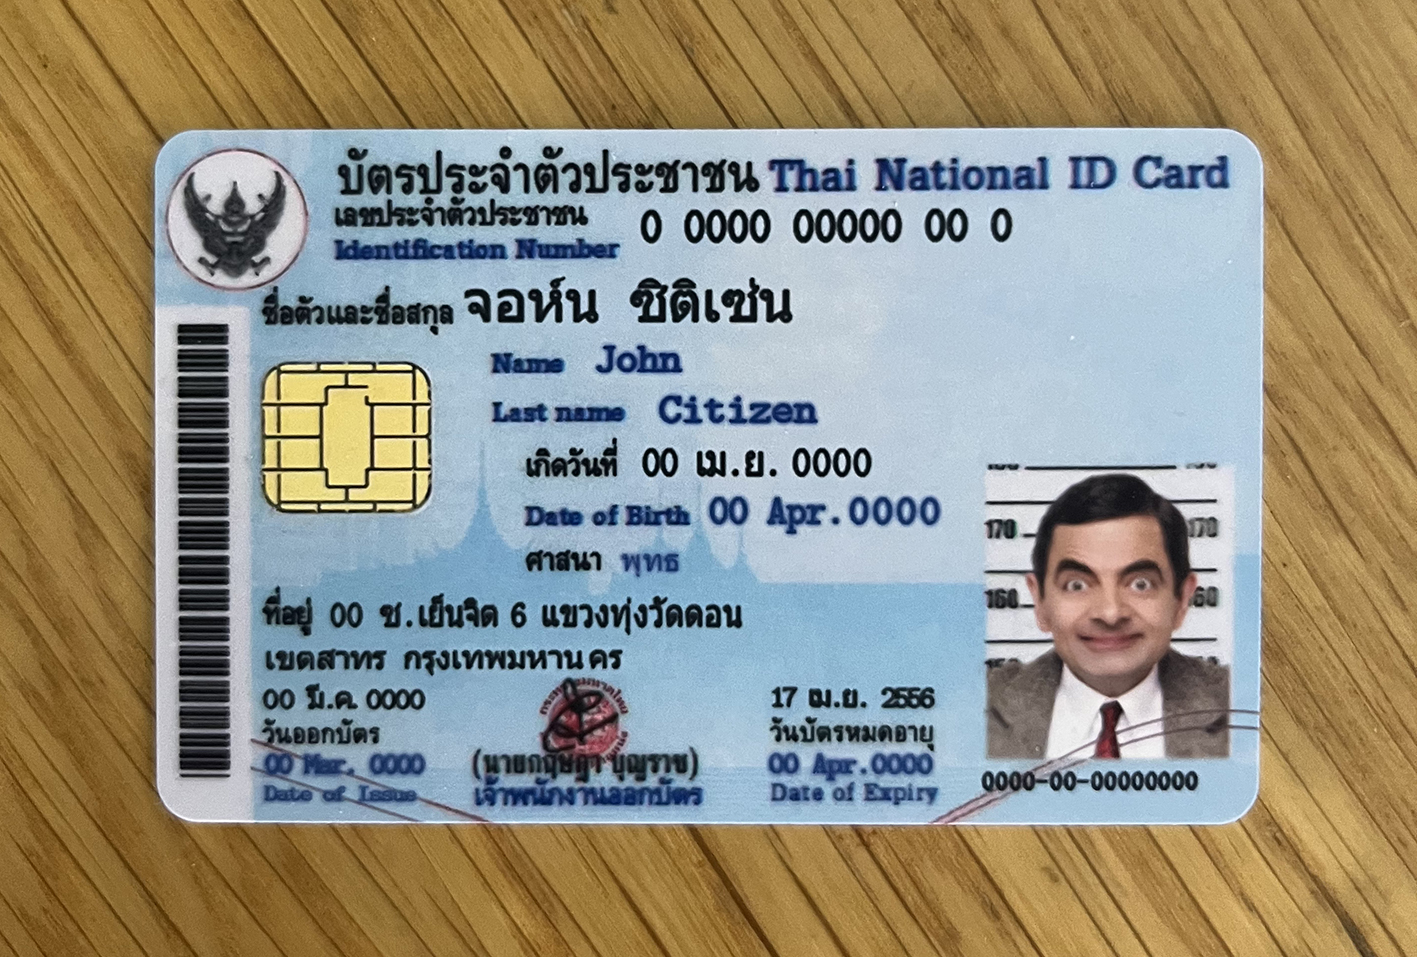 泰国身份证正面.jpg 泰国身份证 亚洲